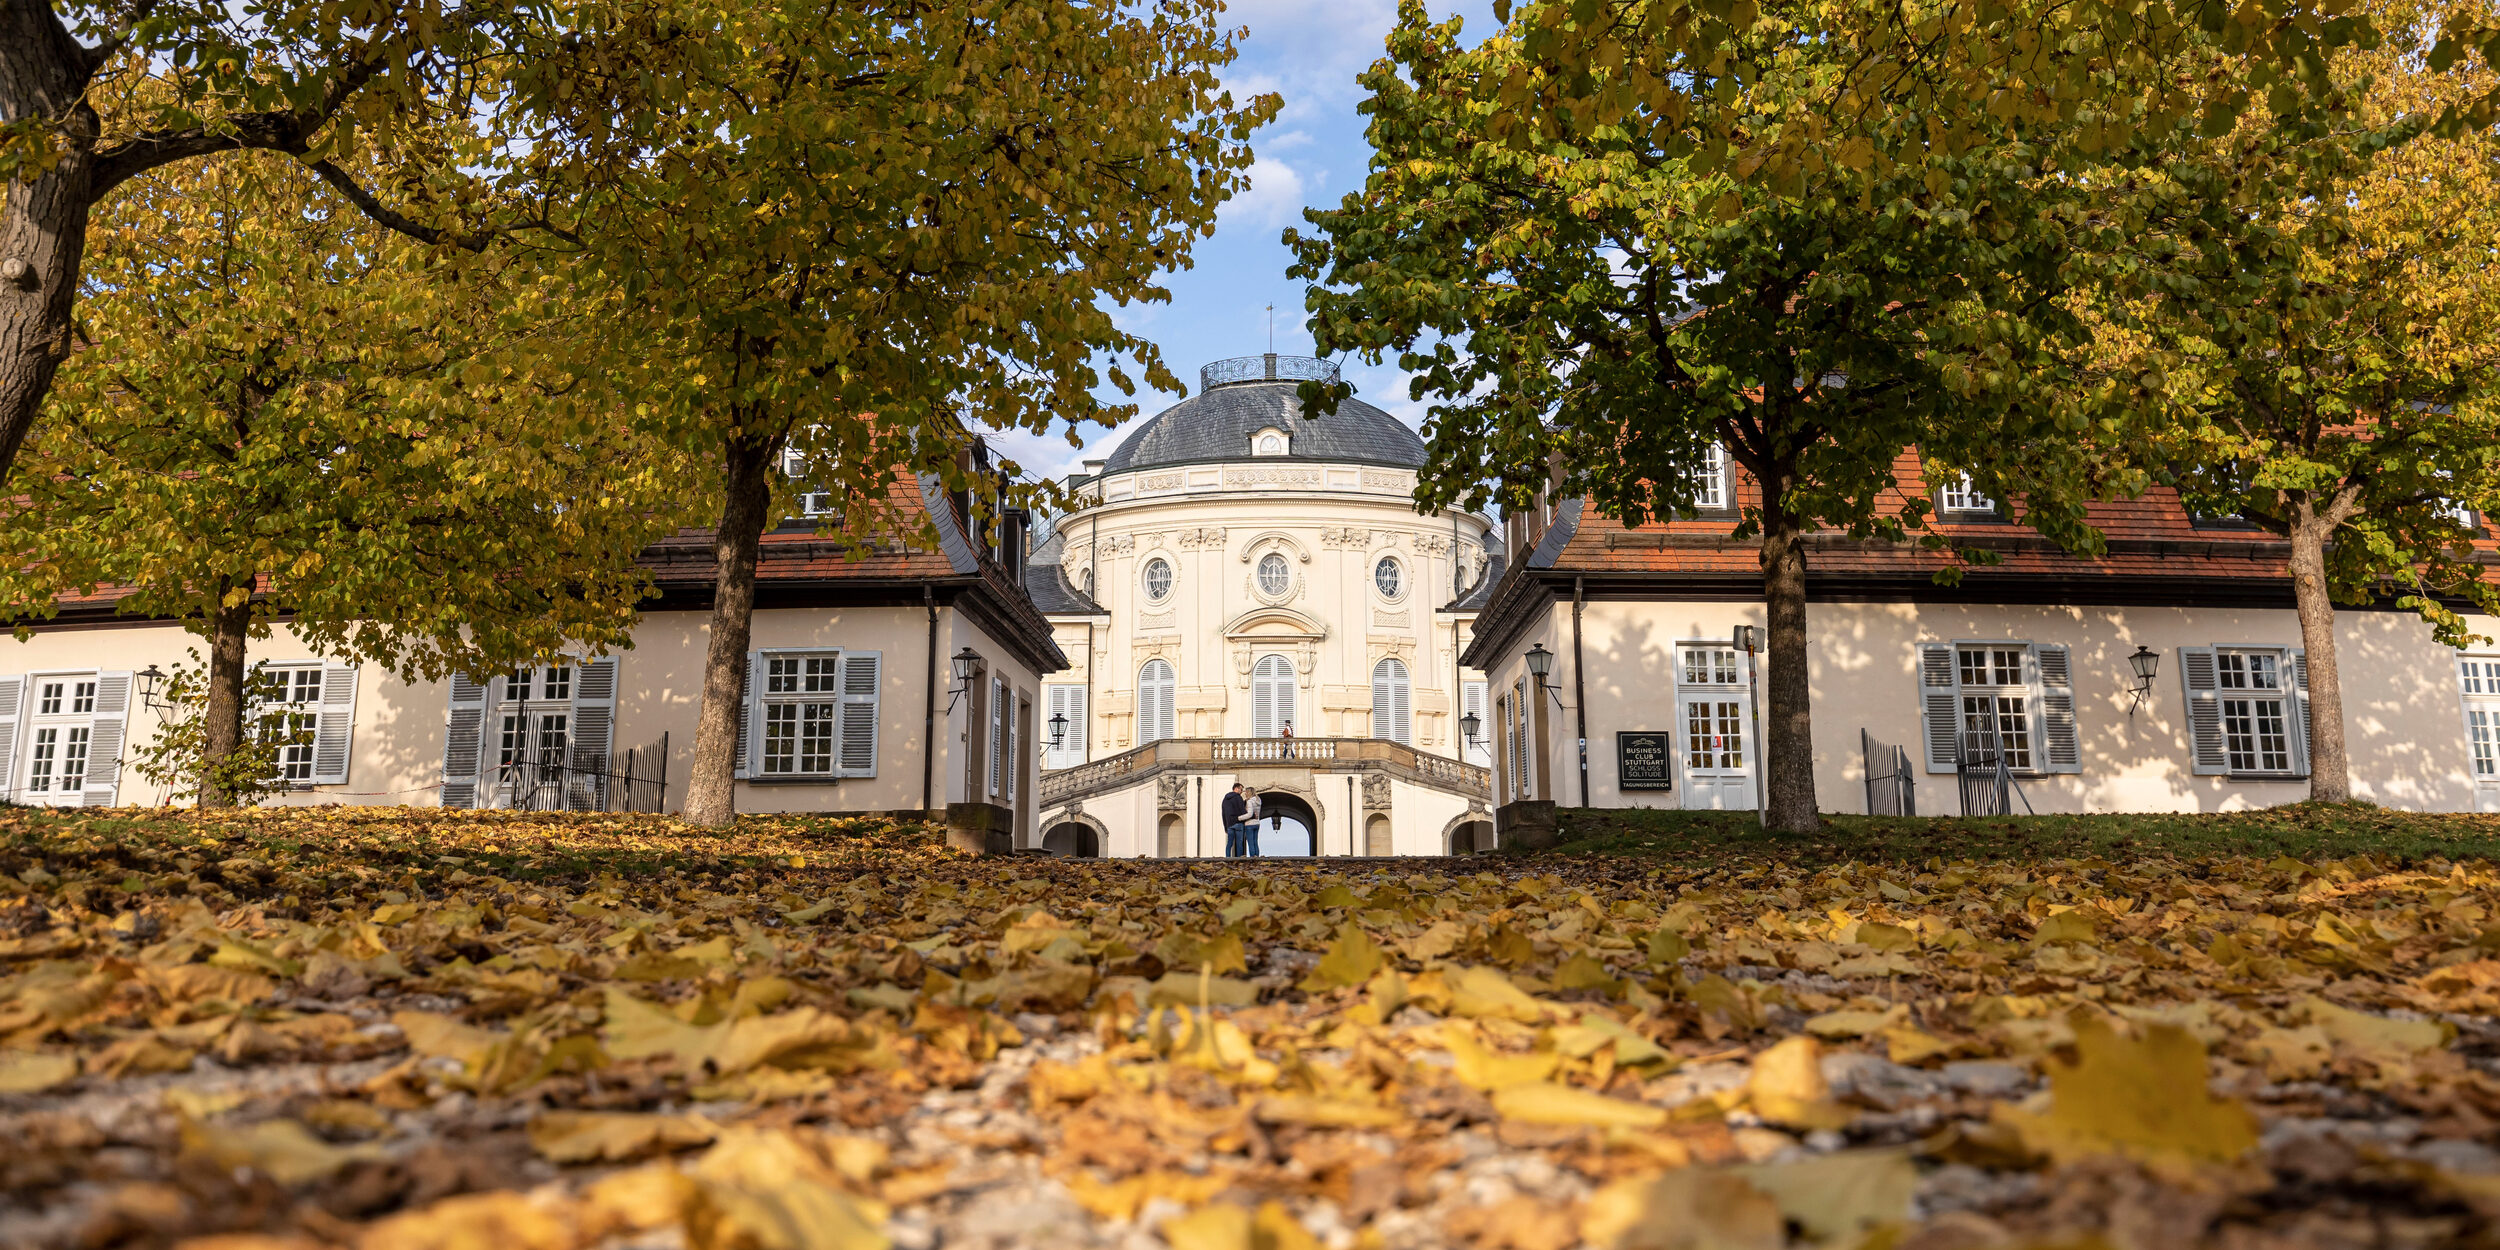 Spätherbst am Schloss Solitude: Ein Baum-Allee bedeckt mit bunten Herbstblättern führt zur Schloss-Kuppel.